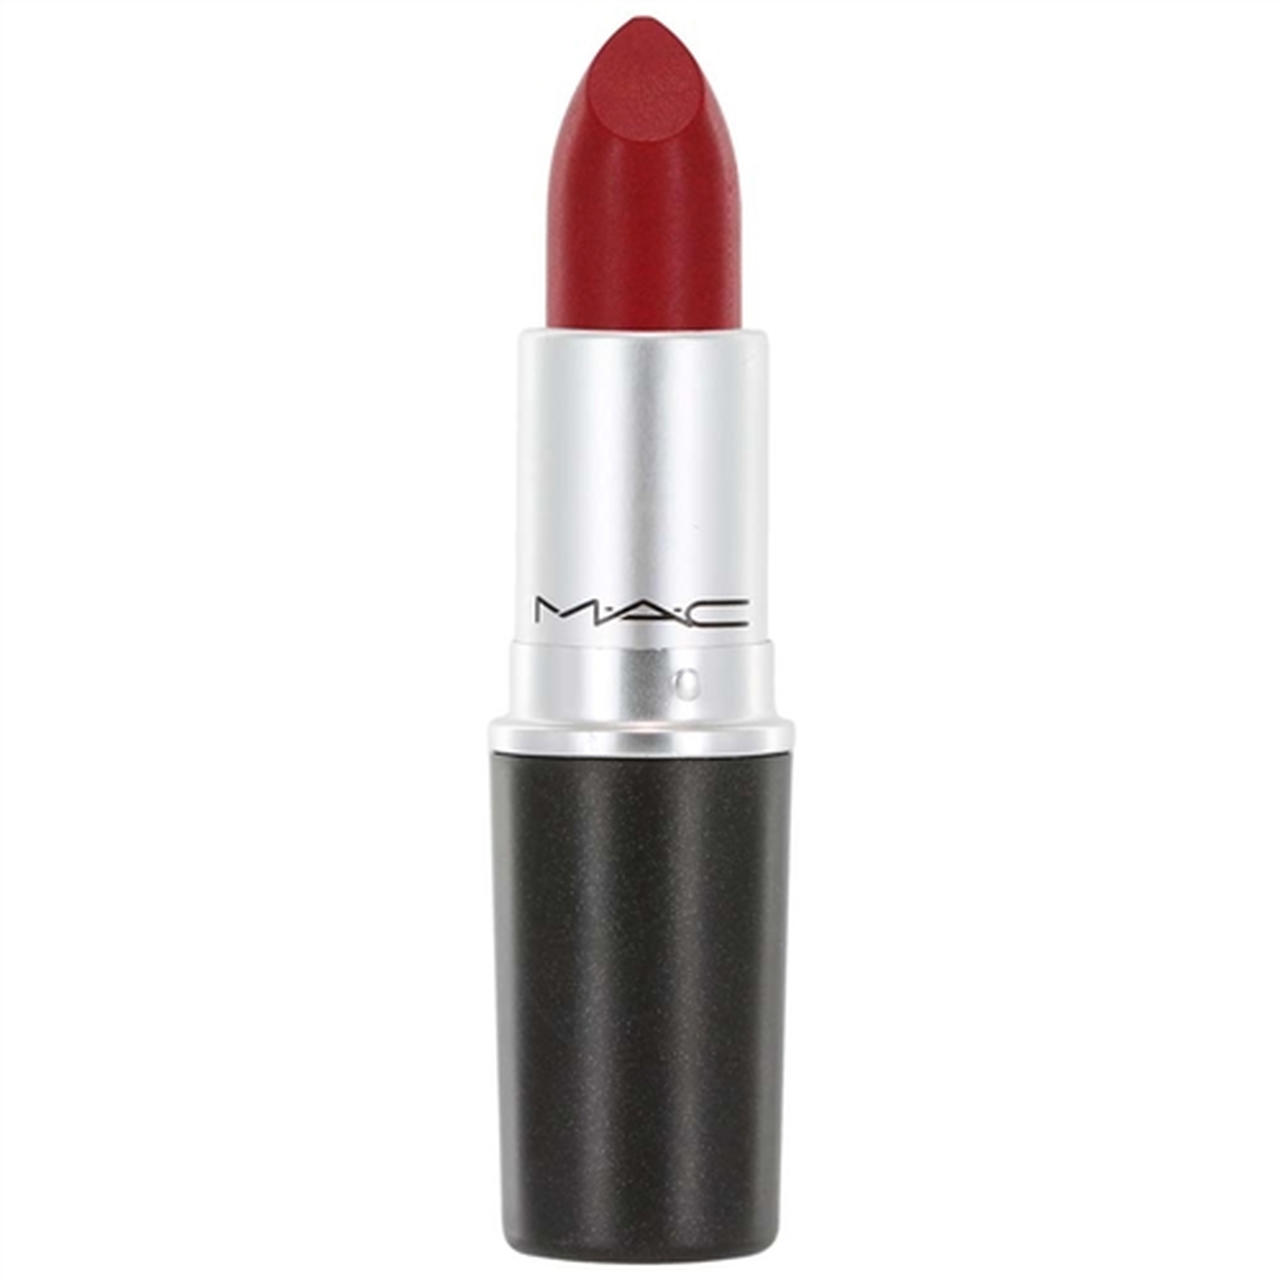 MAC Lipstick Very Berry Red | Glambot.com - Best deals on MAC Makeup ...